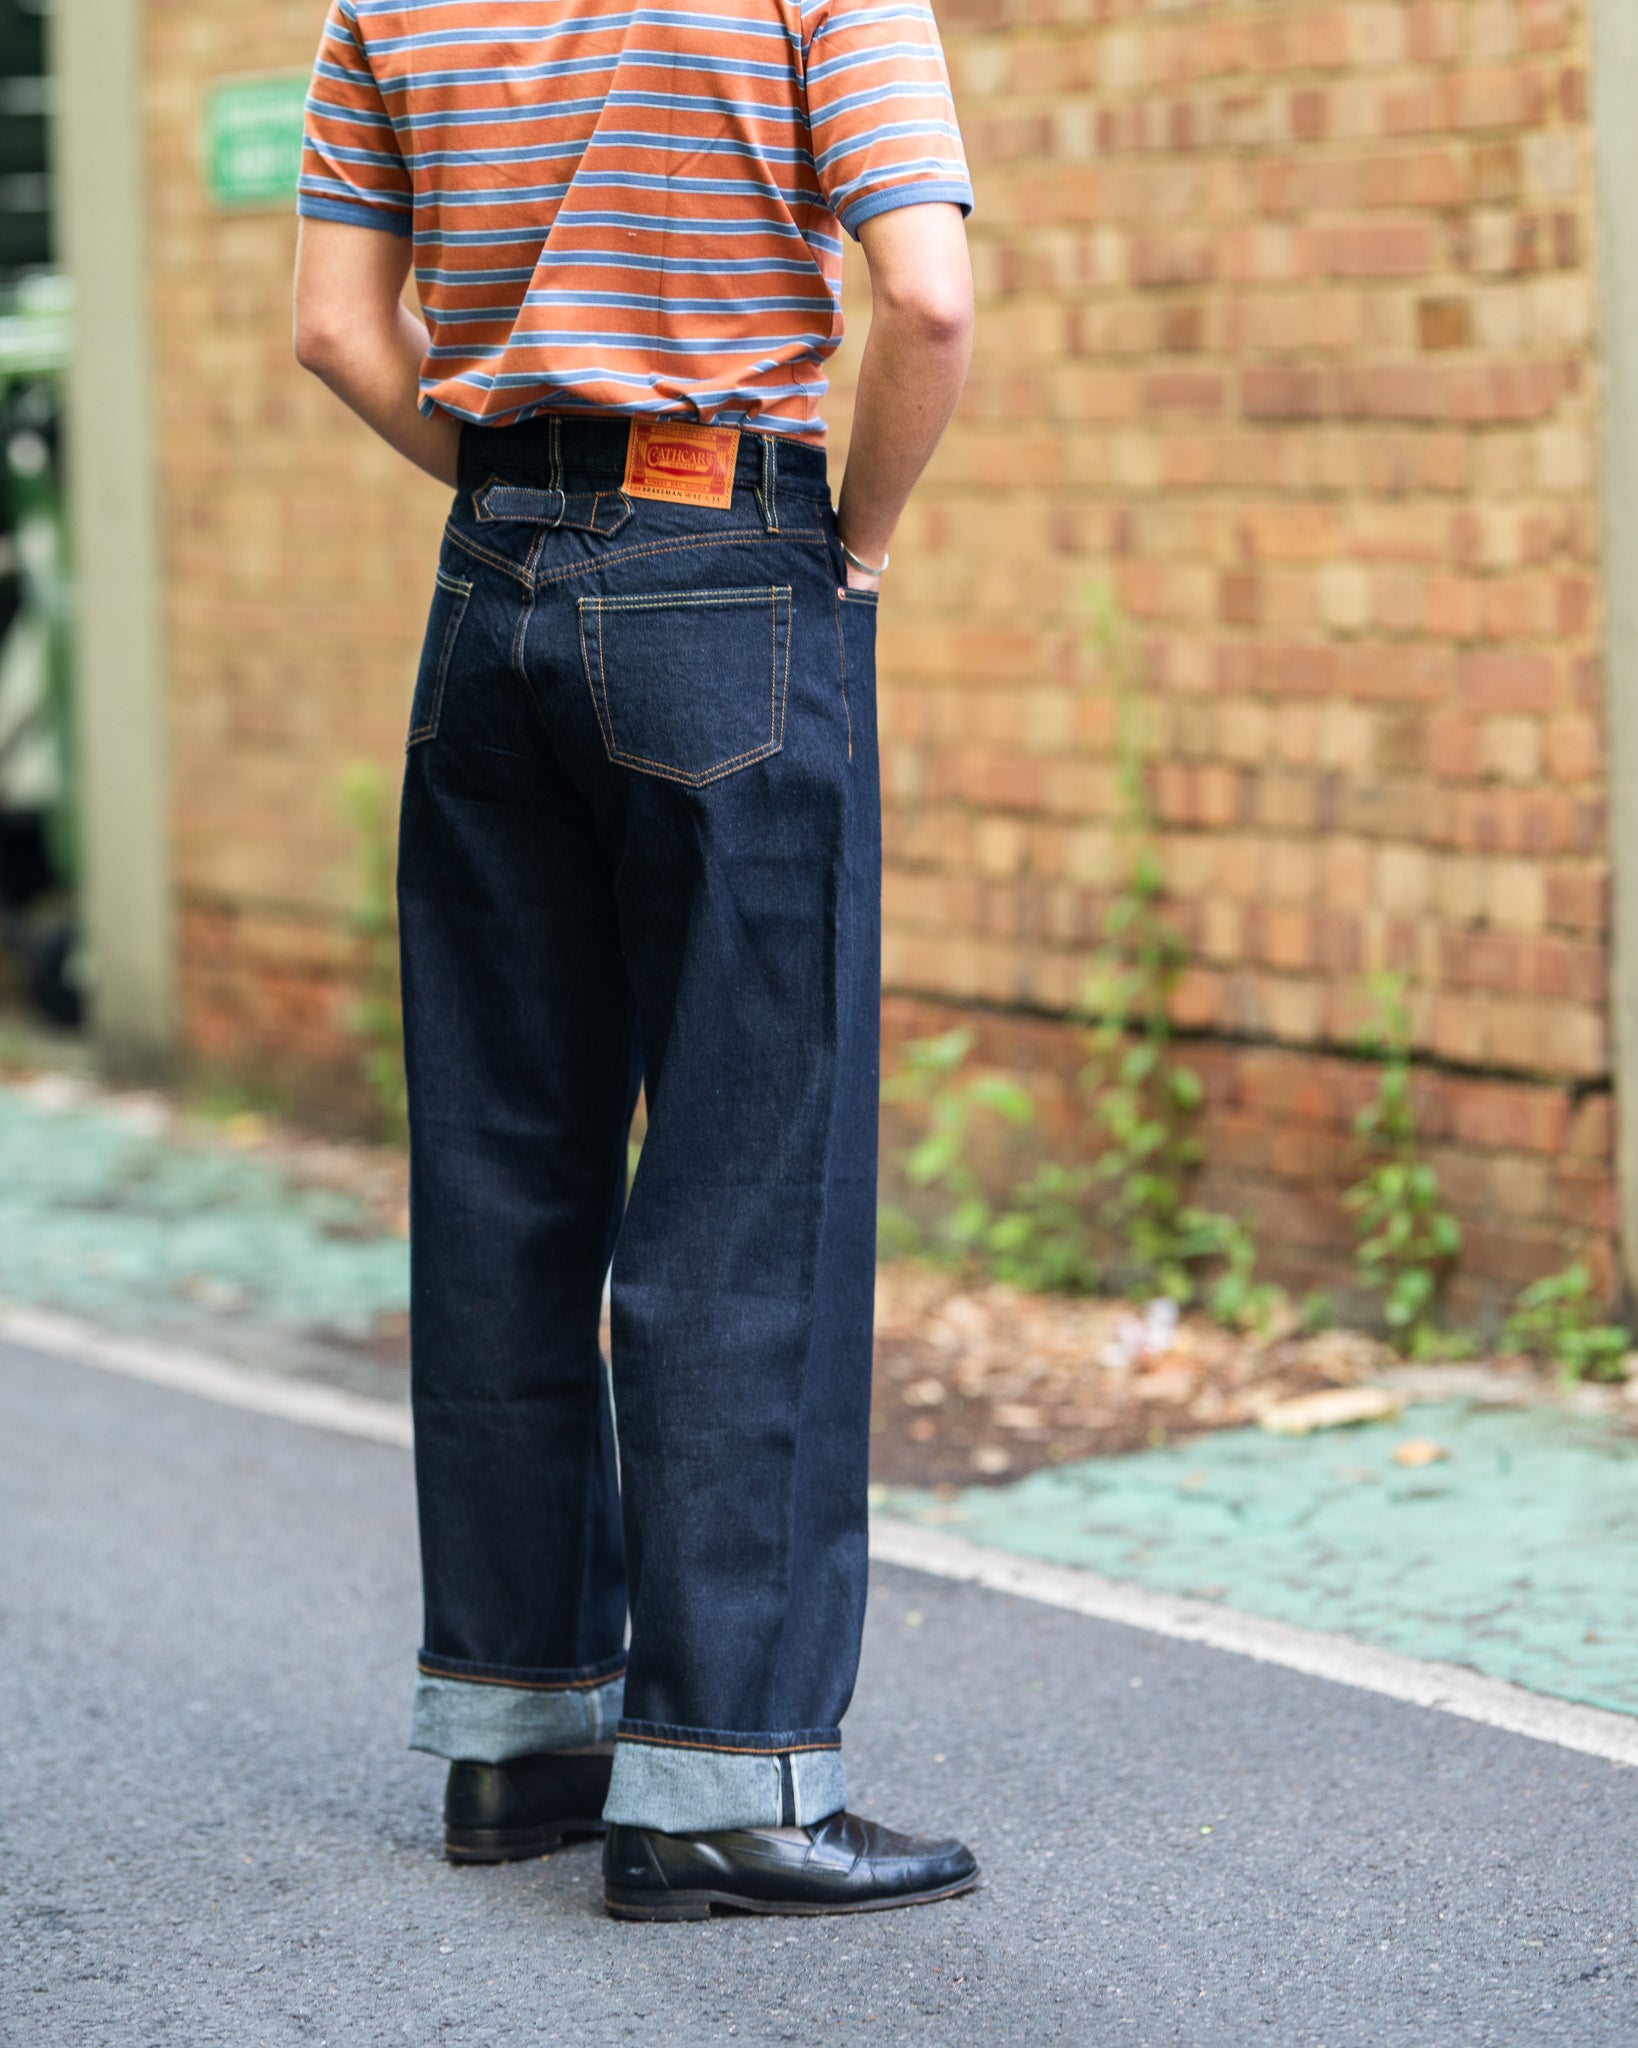 Men’s Vintage Workwear Inspired Clothing Brakeman Jeans  AT vintagedancer.com